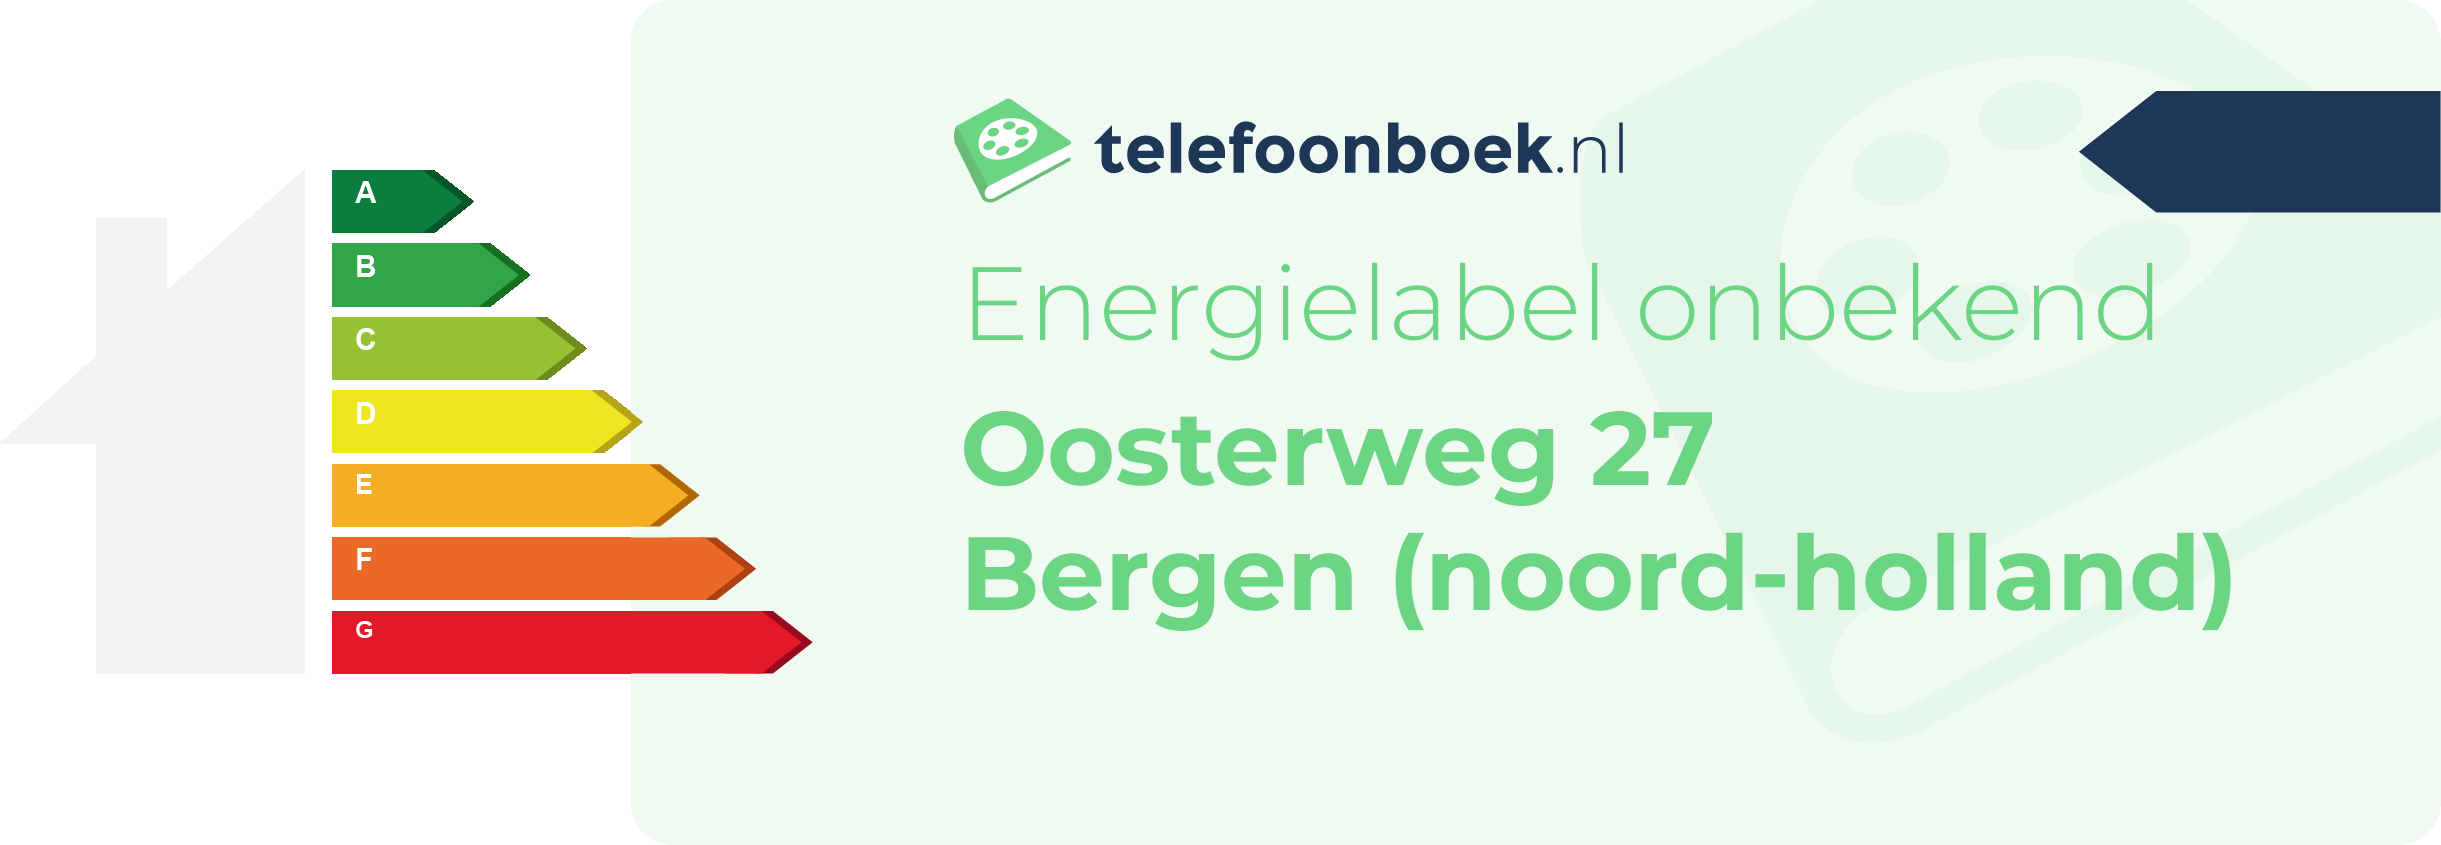 Energielabel Oosterweg 27 Bergen (Noord-Holland)